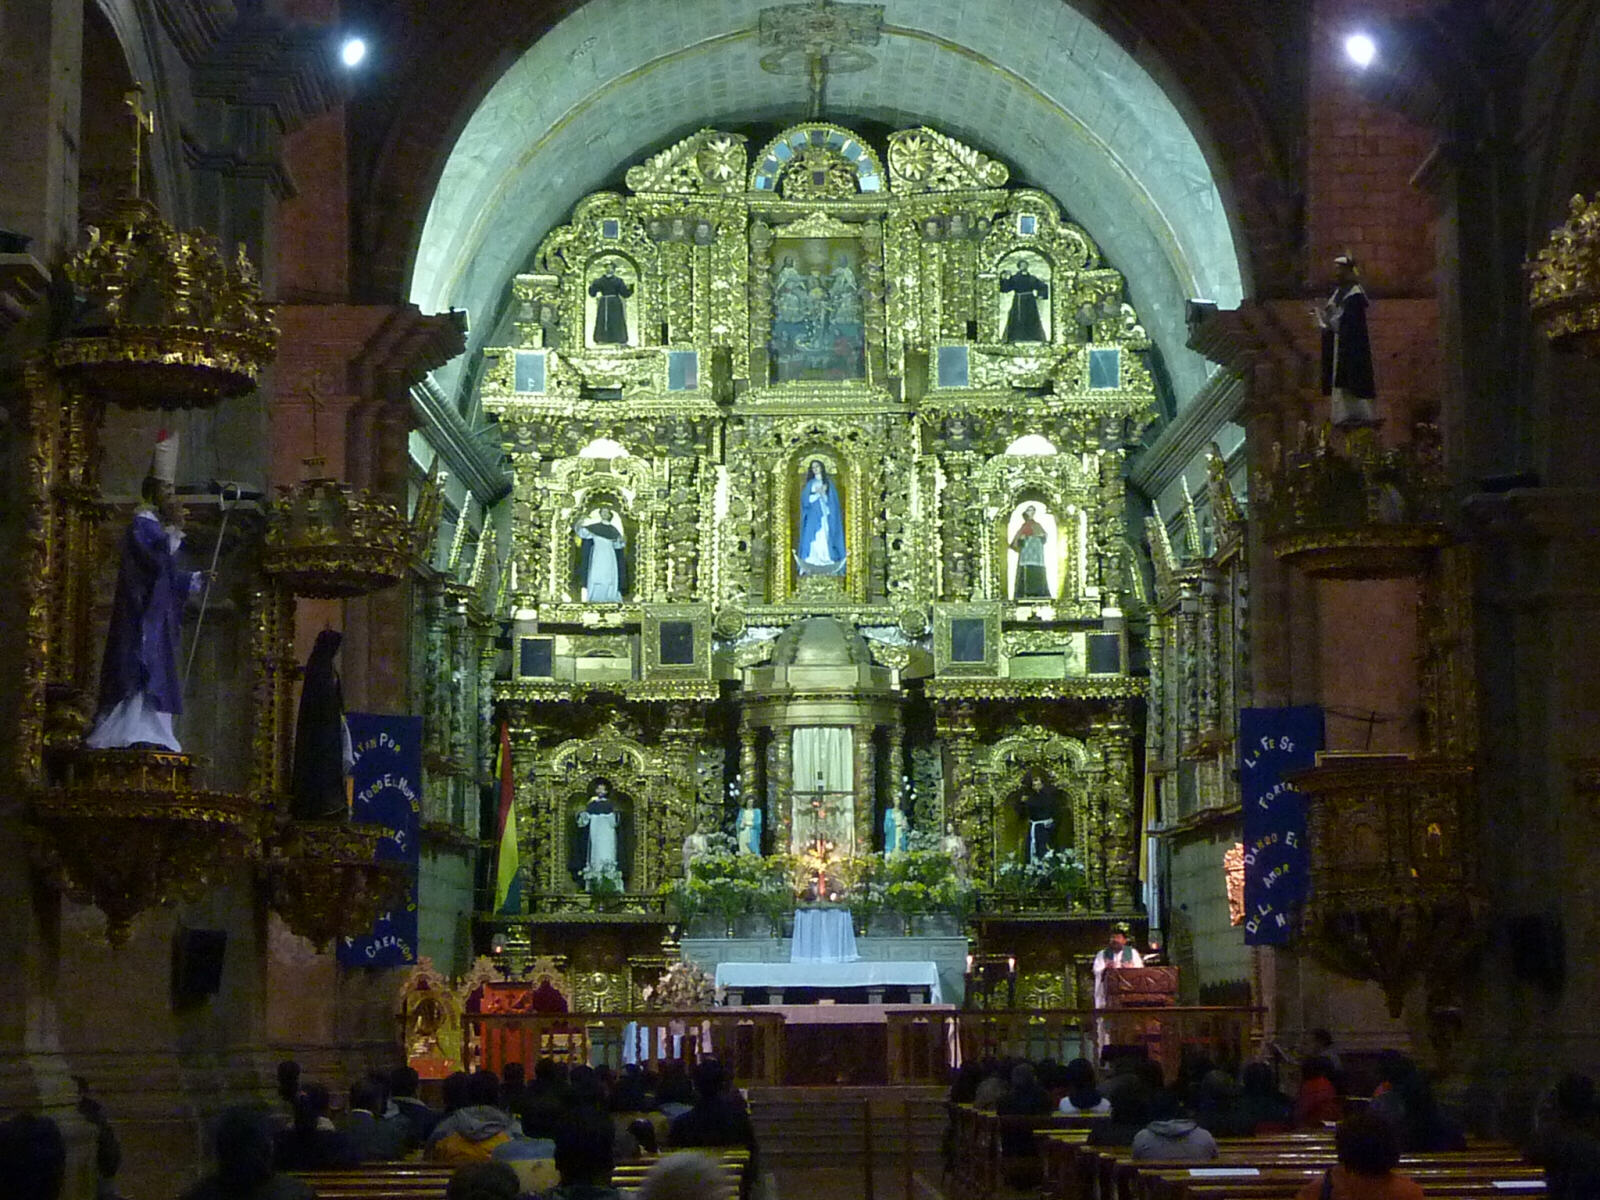 In San Fransisco church in La Paz, Bolivia